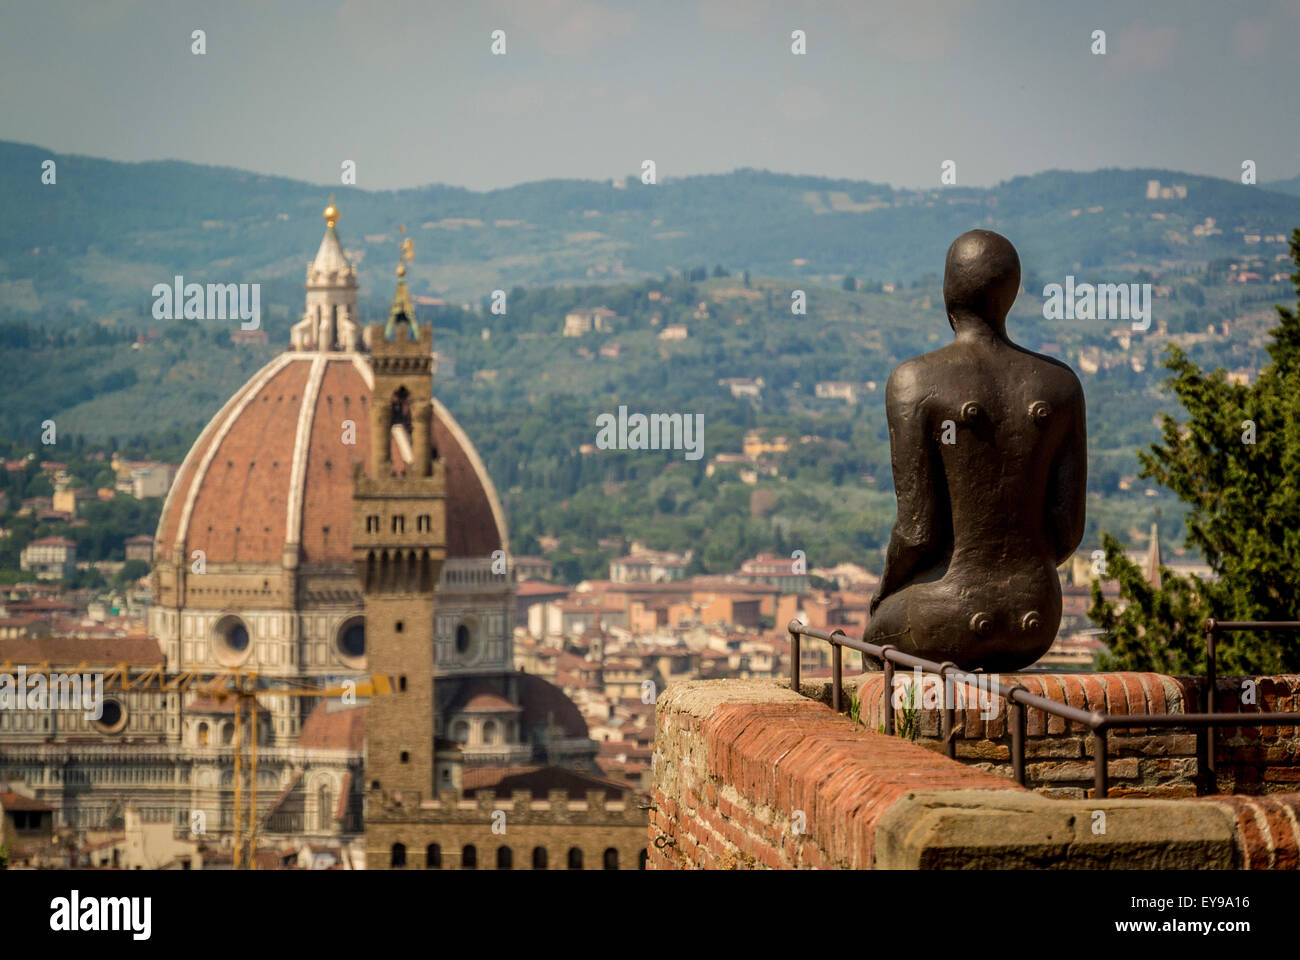 Cathédrale de Florence avec la sculpture d'un homme de fer d'Antony Gormley au premier plan. Photo de fort Belvedere. Partie de l'EXPOSITION HUMAINE. Florence, Italie. Banque D'Images